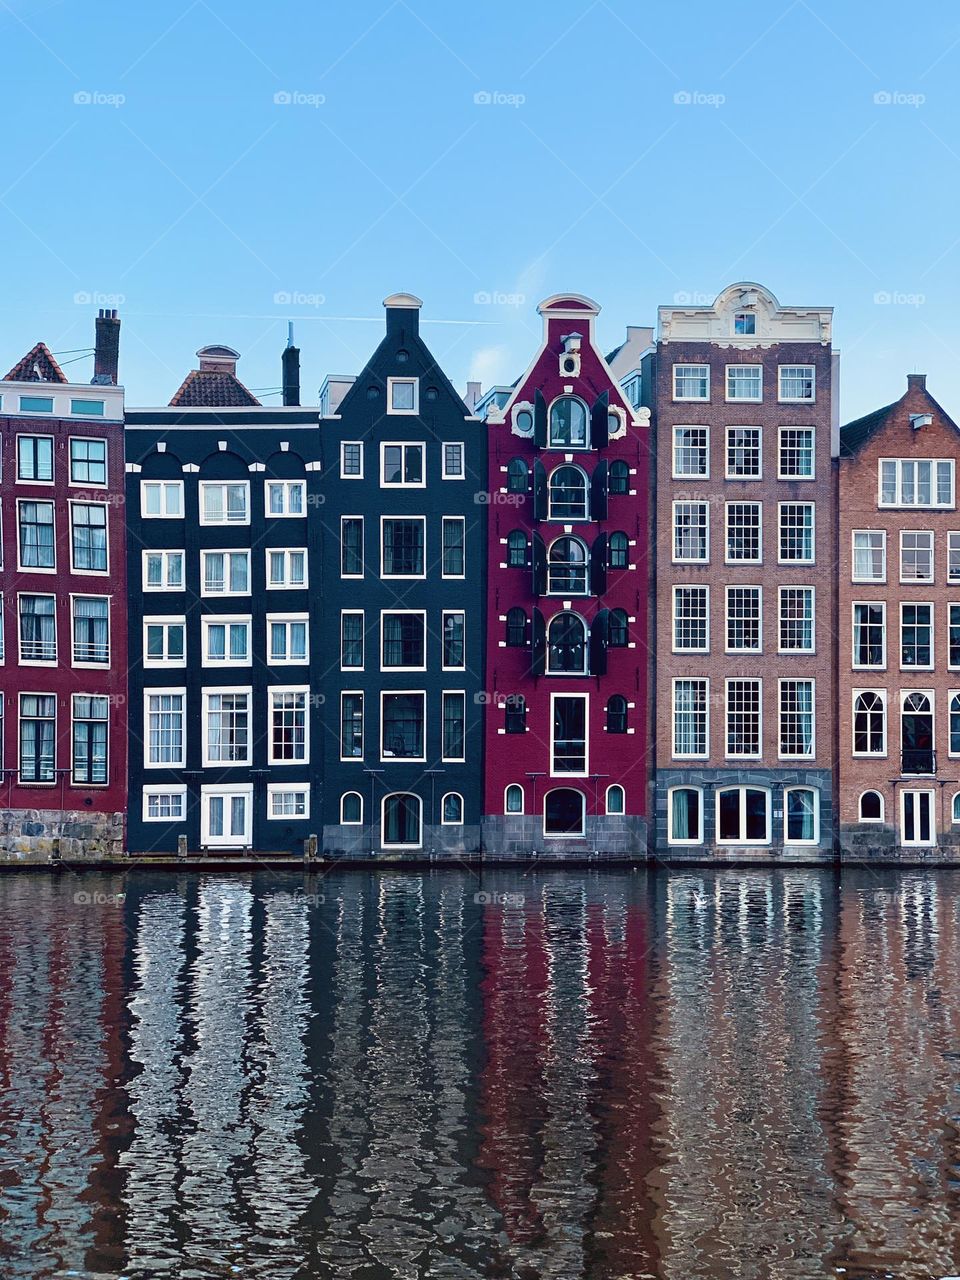 Amsterdam architecture 